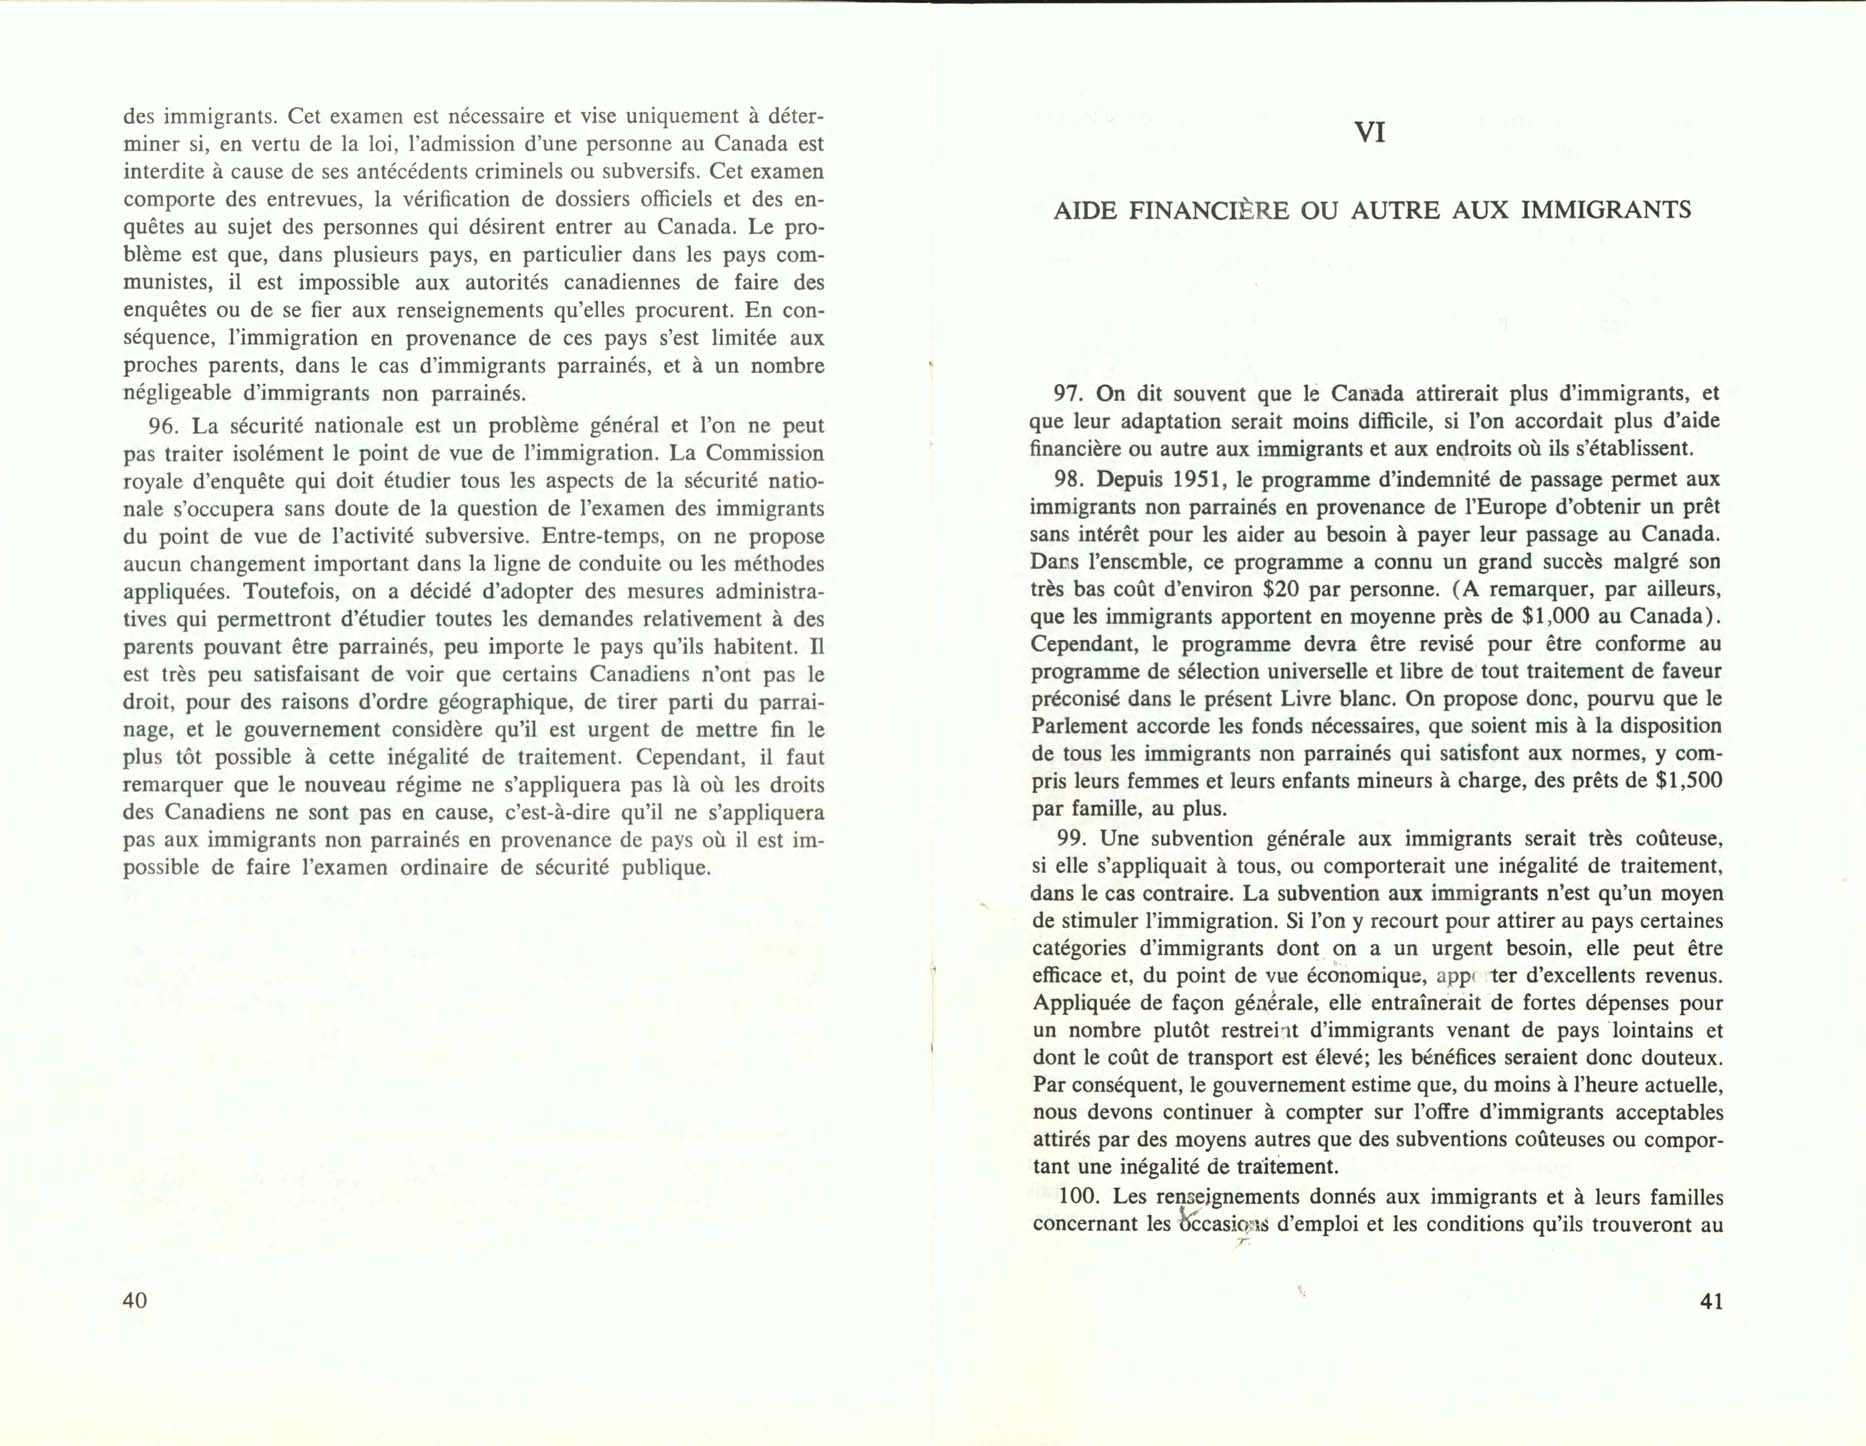 Page 40, 41 Livre Blanc sur l’immigration, 1966